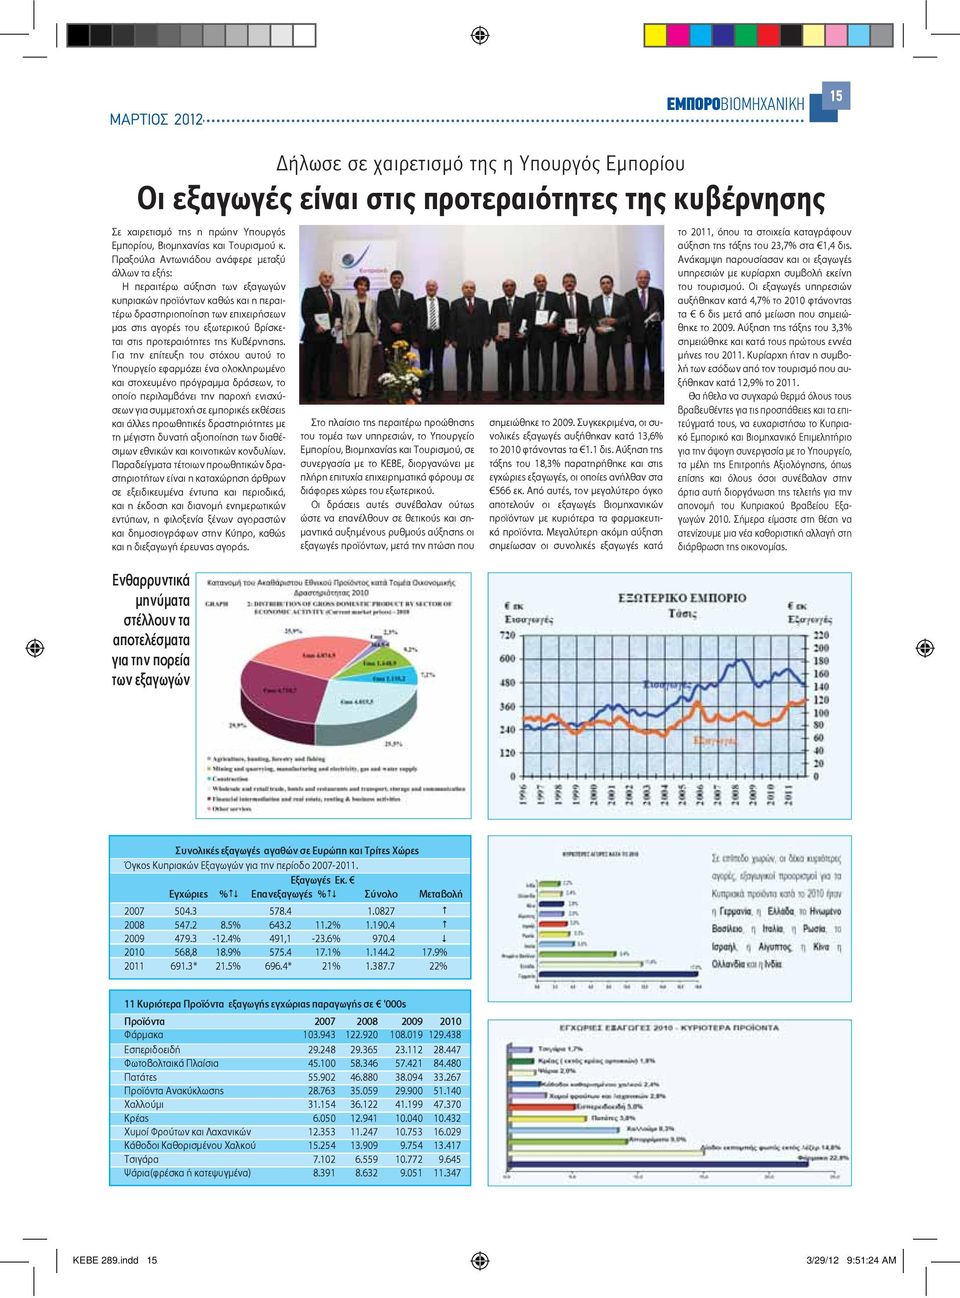 Πραξούλα Αντωνιάδου ανάφερε μεταξύ άλλων τα εξής: Η περαιτέρω αύξηση των εξαγωγών κυπριακών προϊόντων καθώς και η περαιτέρω δραστηριοποίηση των επιχειρήσεων μας στις αγορές του εξωτερικού βρίσκεται